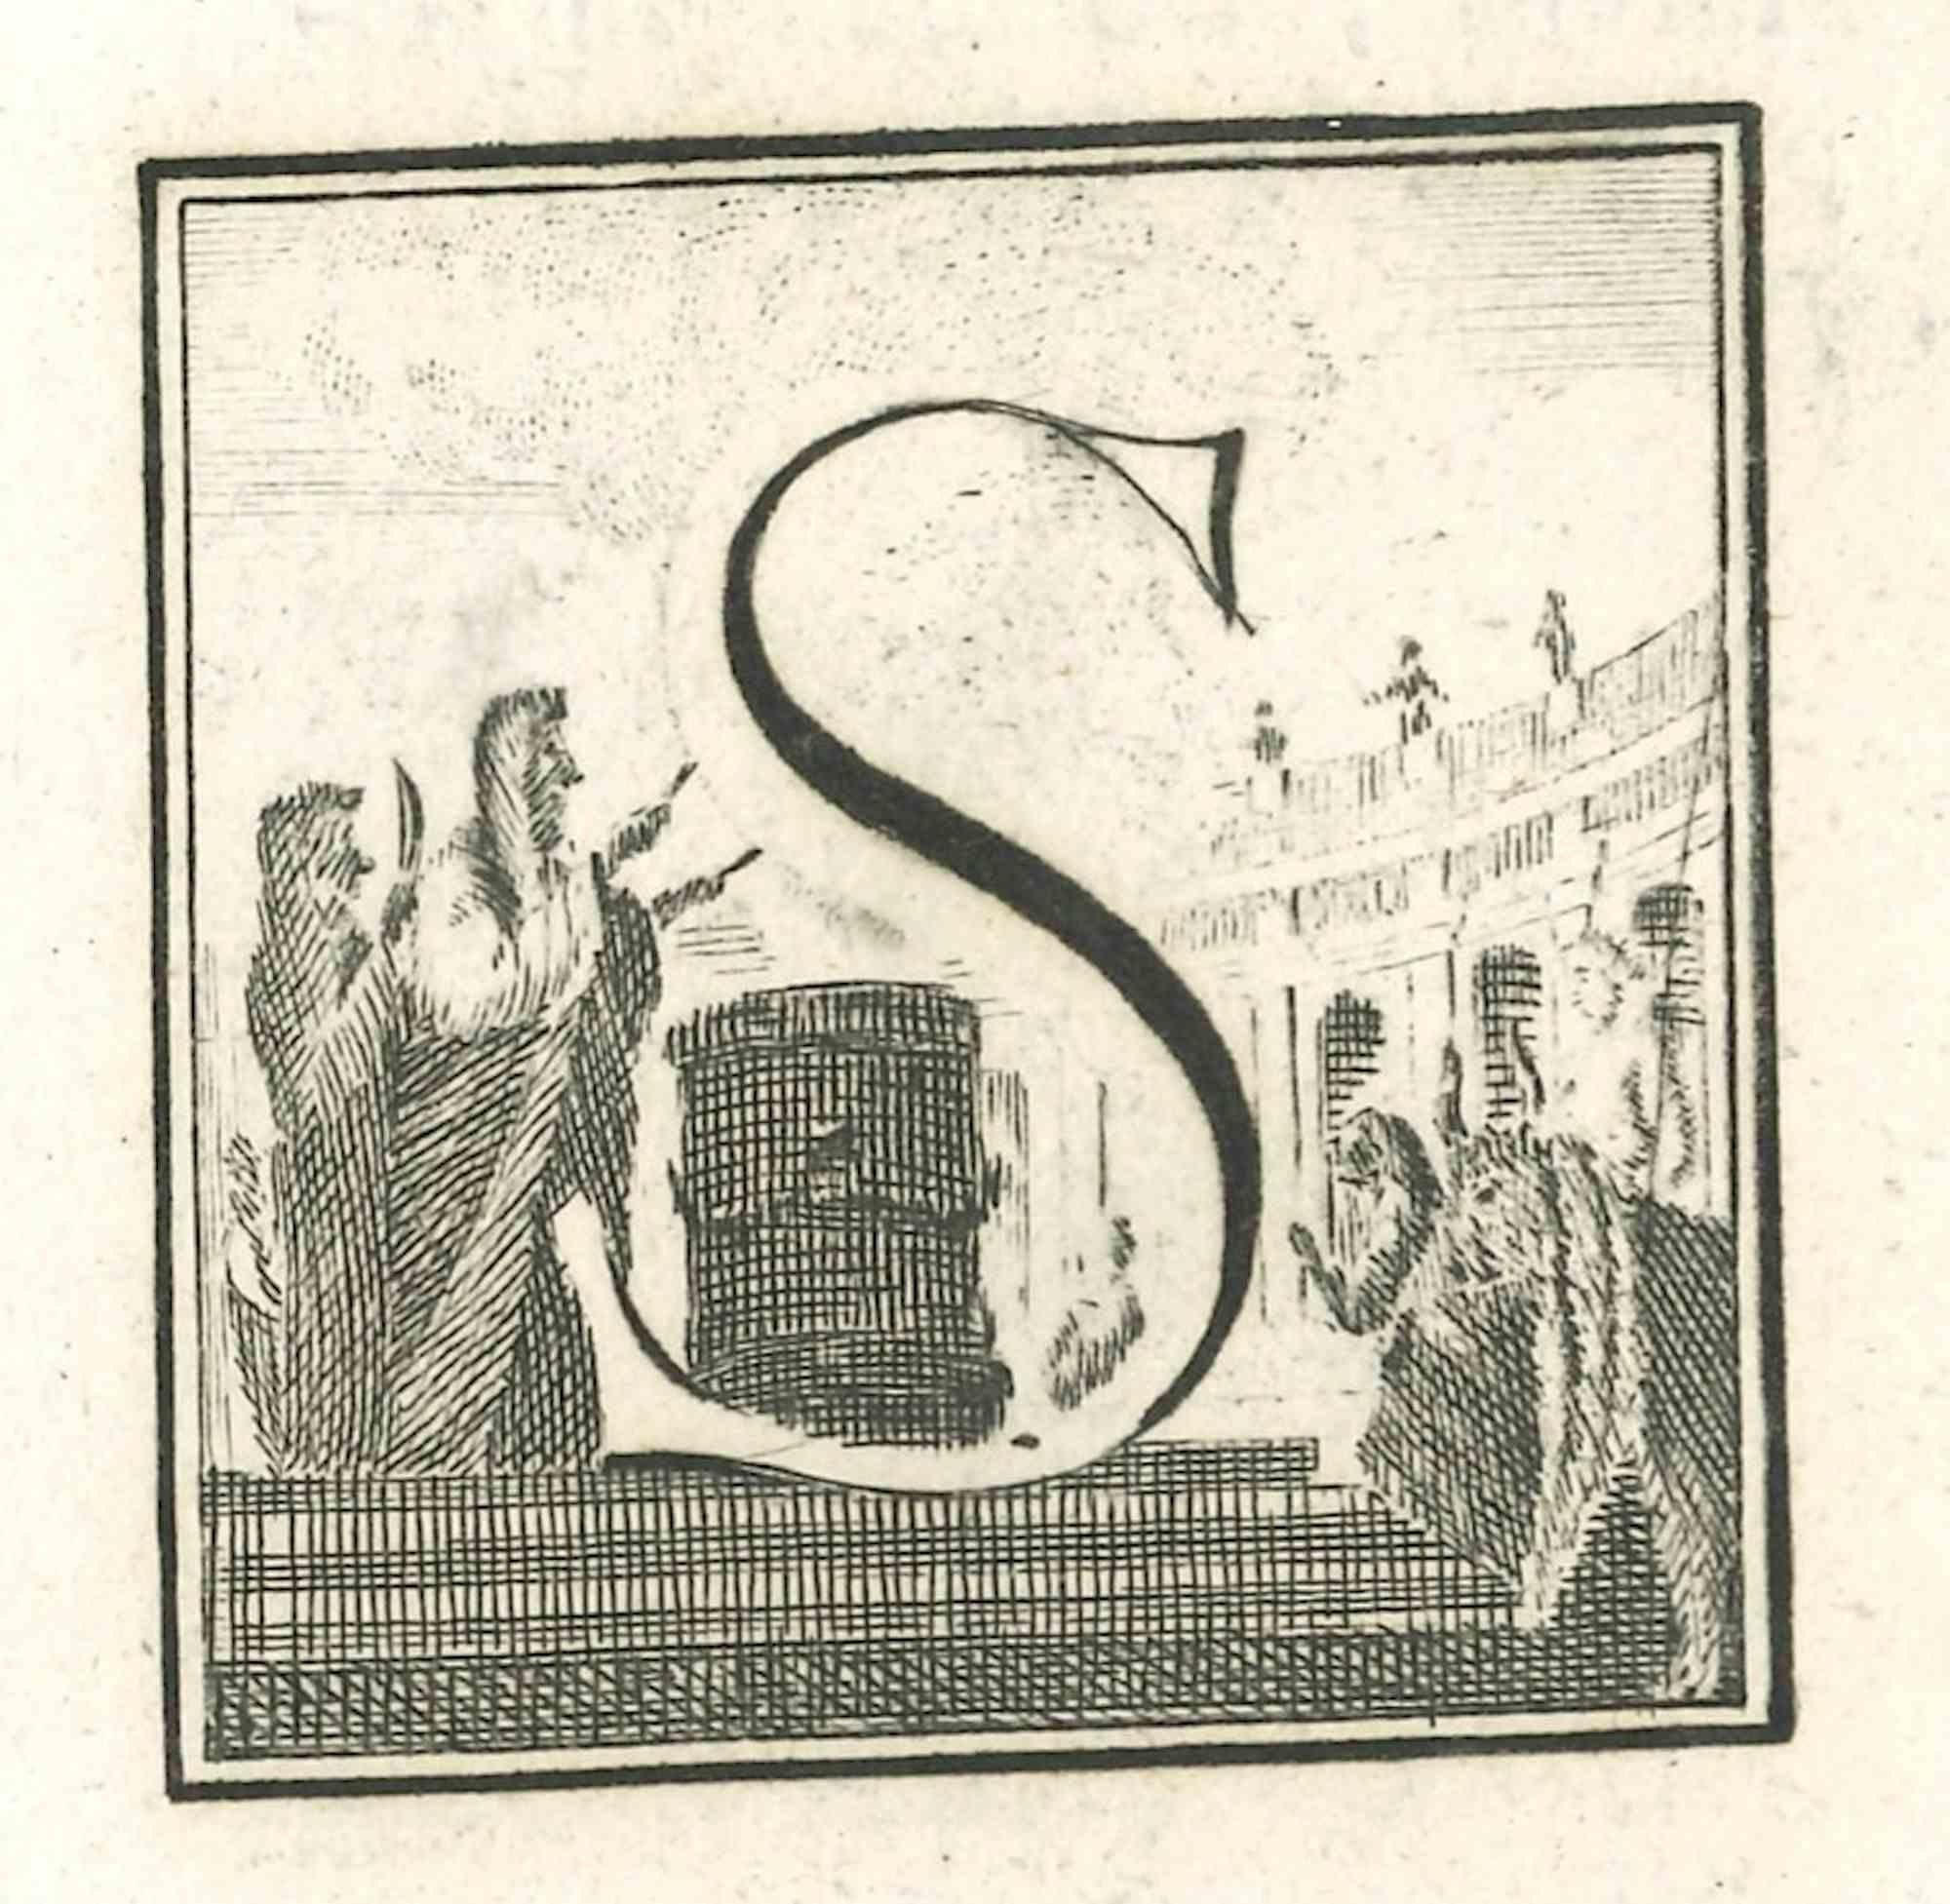 Lettre de l'alphabet S,  de la série "Antiquités d'Herculanum", est une gravure sur papier réalisée par divers auteurs au 18ème siècle.

Bonnes conditions.

La gravure appartient à la suite d'estampes "Antiquités d'Herculanum exposées" (titre